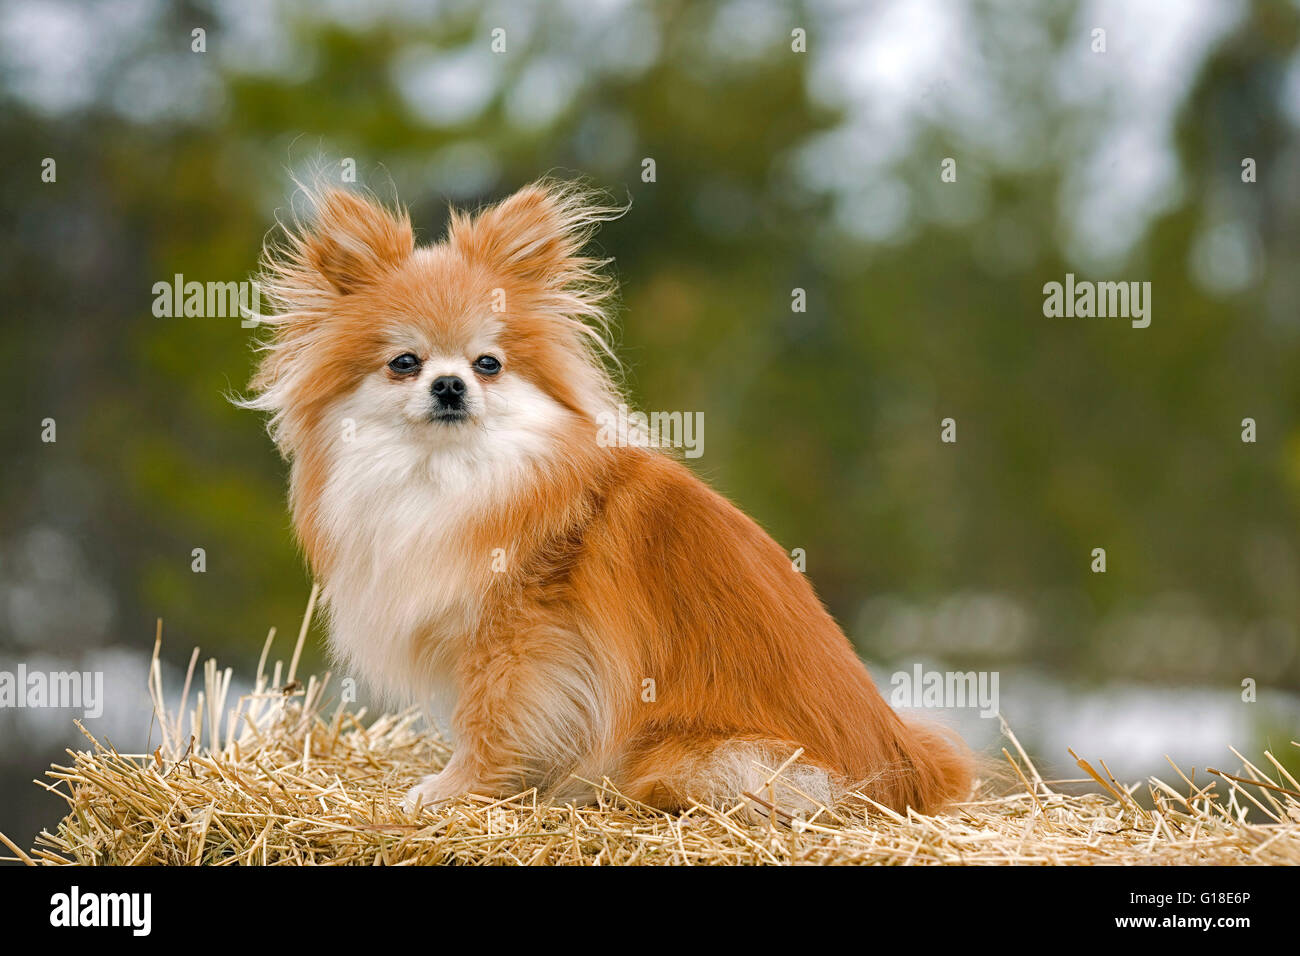 Pomeranian sitting on straw bale, portrait Stock Photo